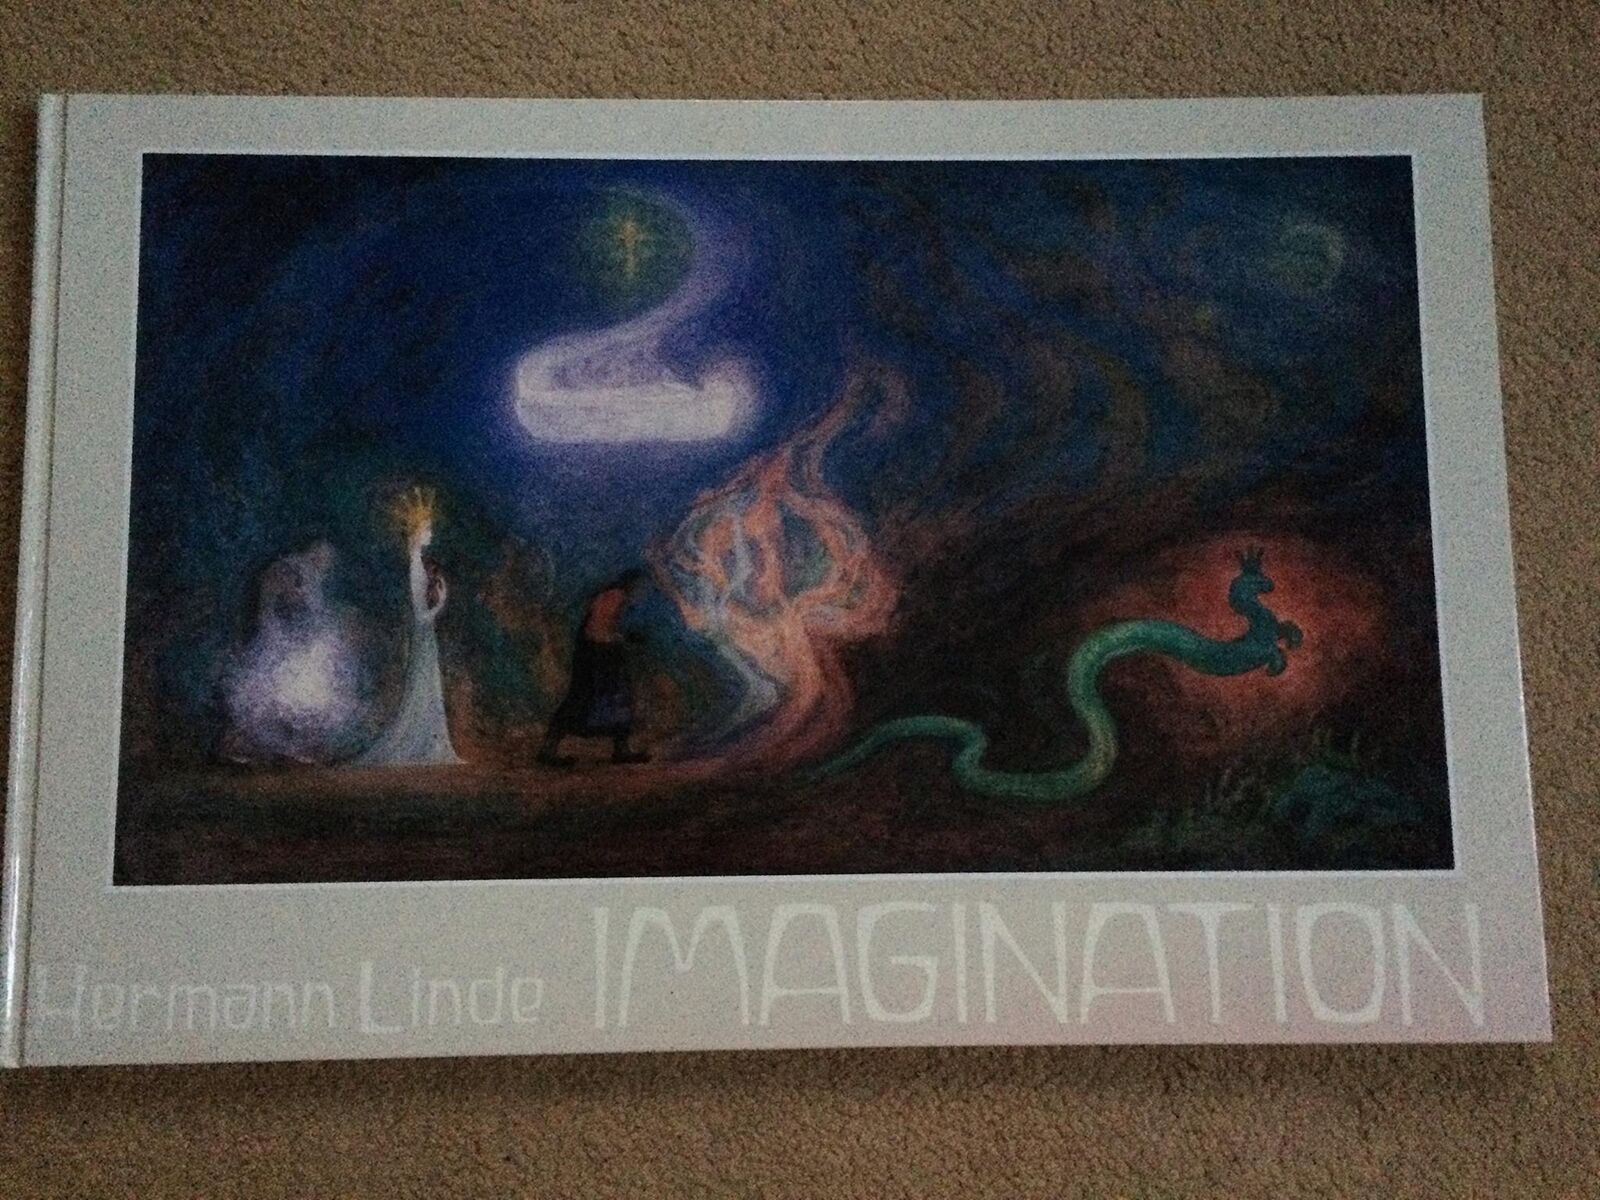 Imagination [Hardcover] Clare Hollister - Herman Linde